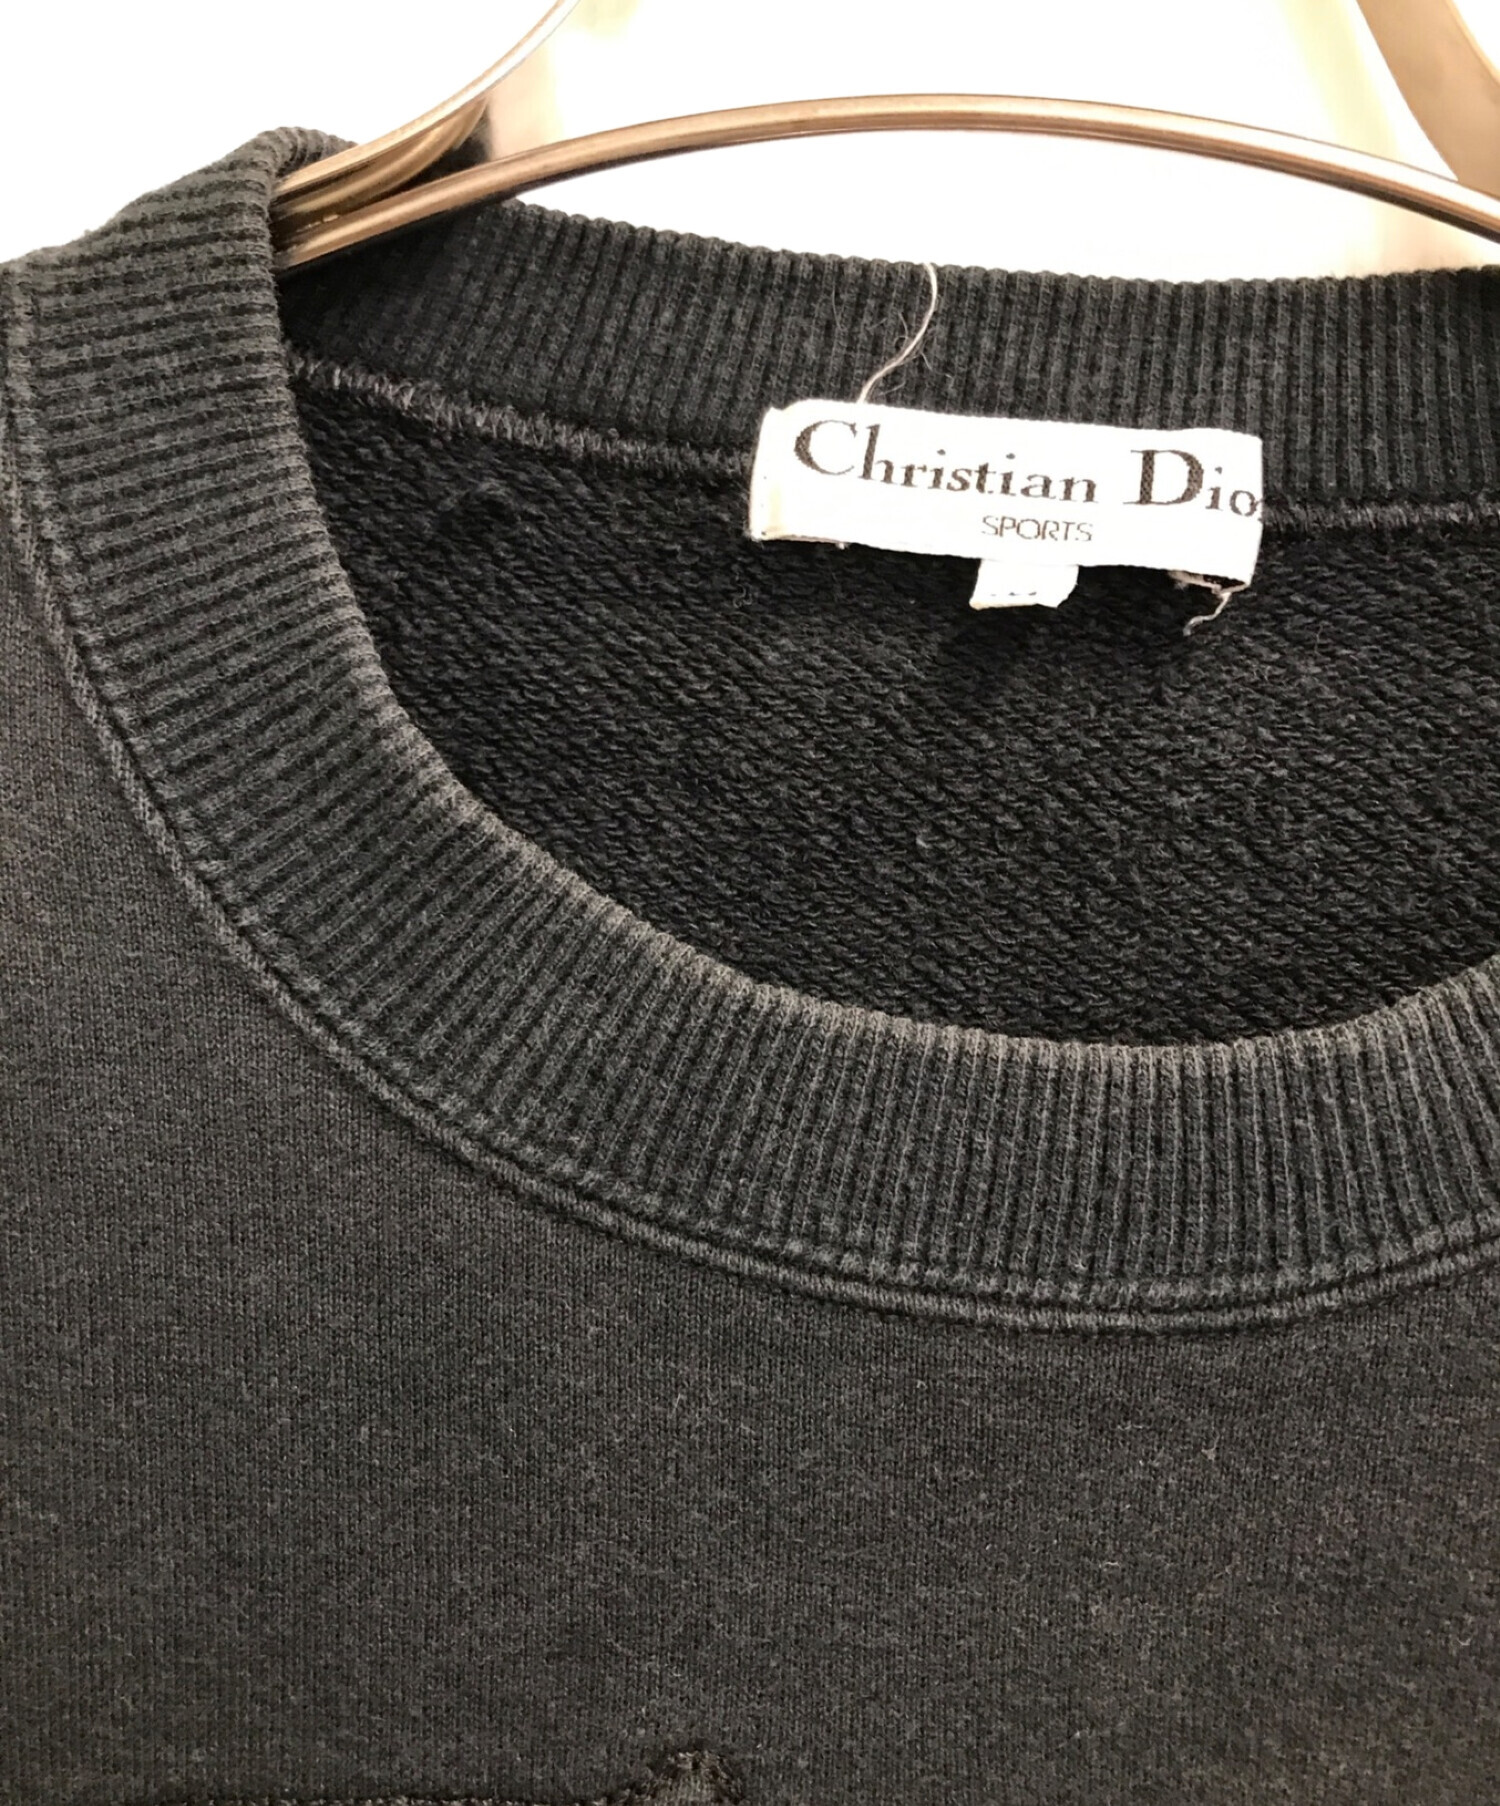 中古・古着通販】Christian Dior Sports (クリスチャン ディオール 